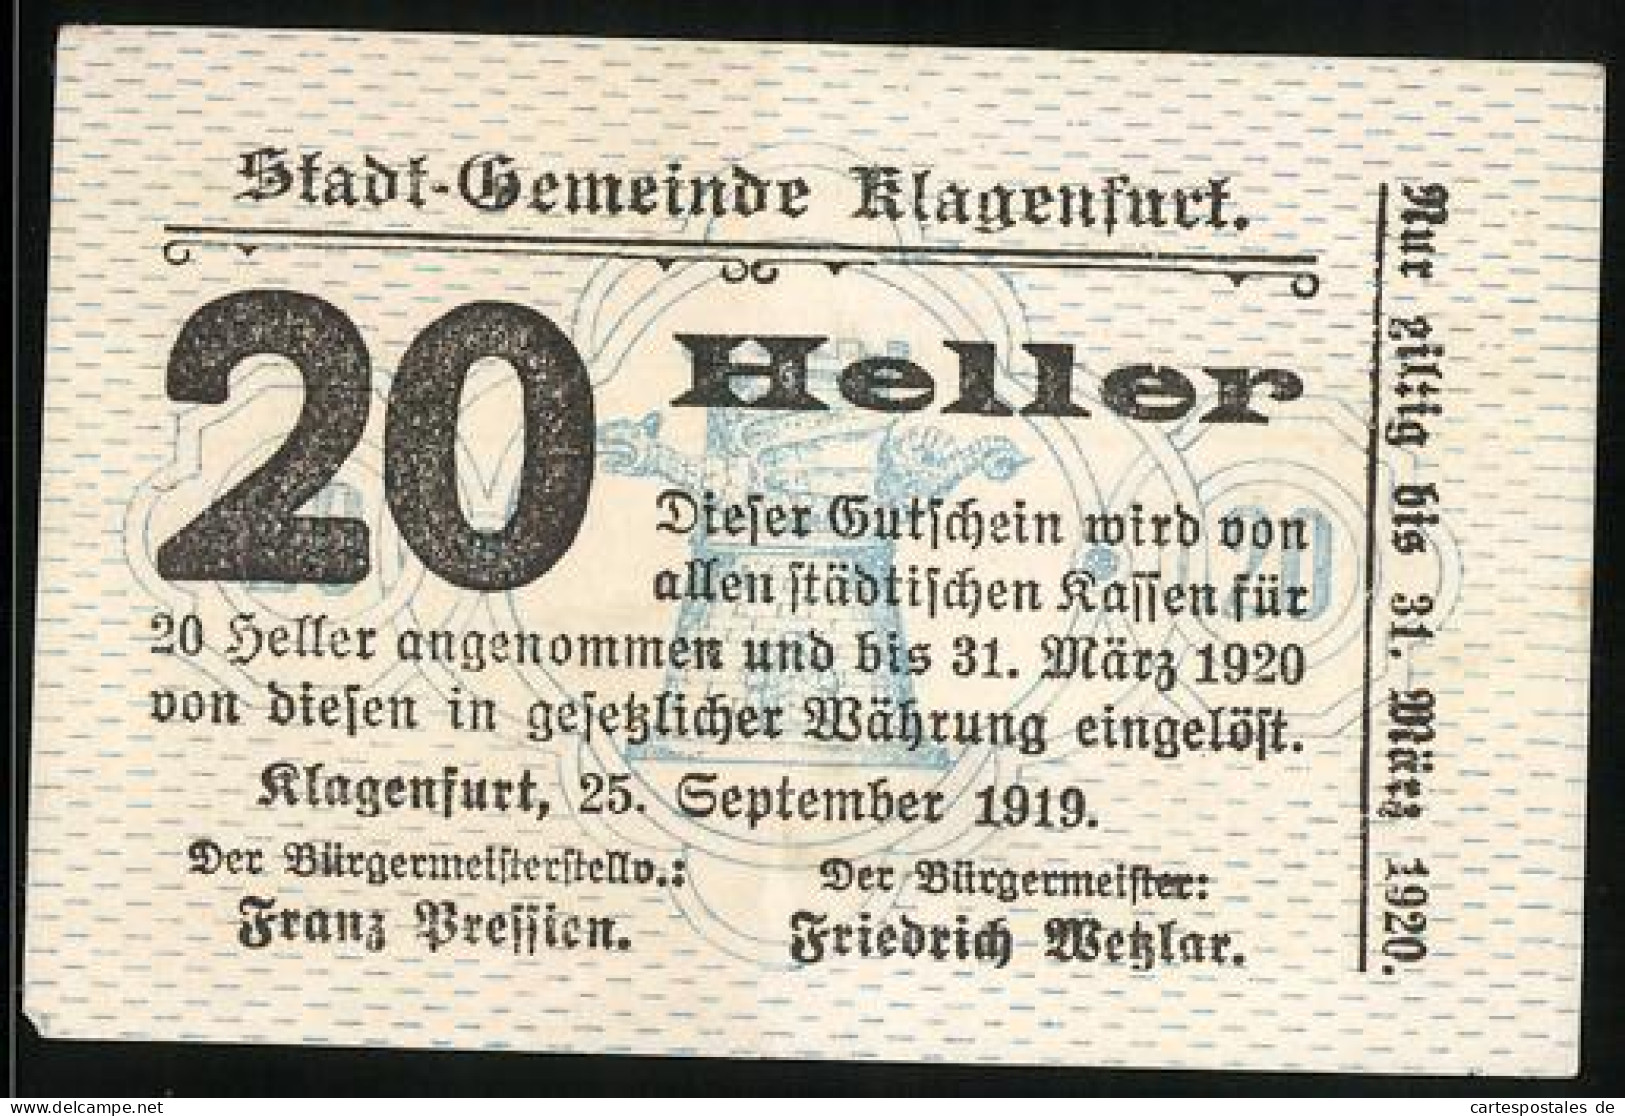 Notgeld Klagenfurt 1919, 20 Heller, Bürgermeister Friedrich Wetzlar  - Oesterreich